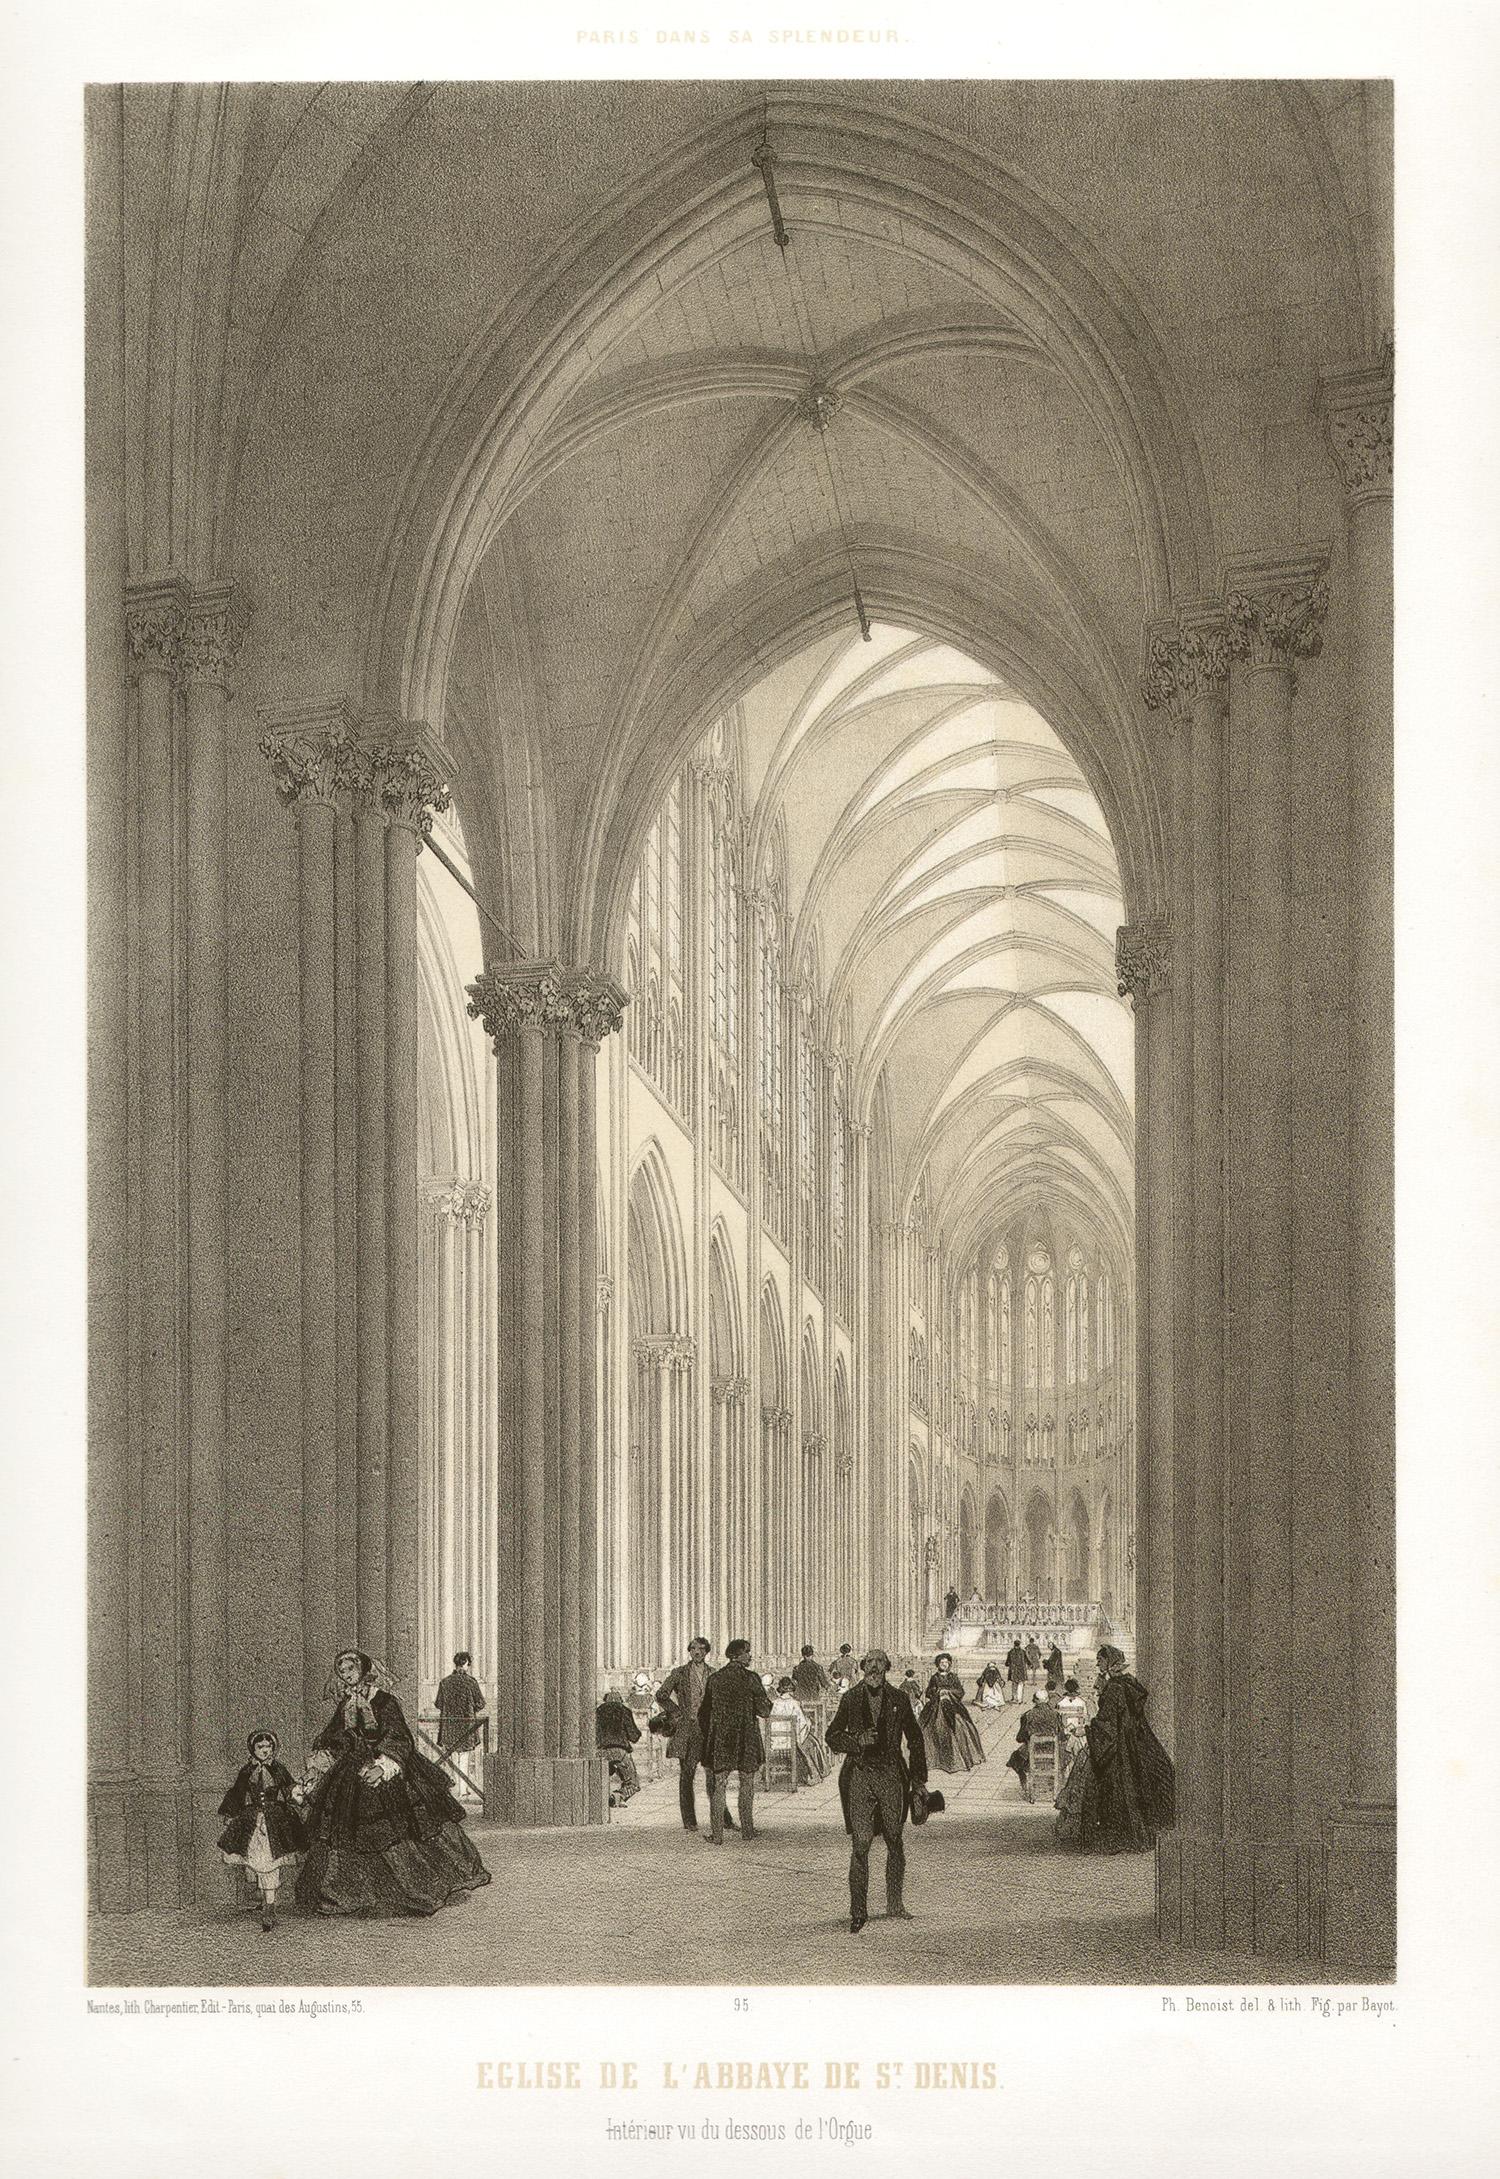 Paris - Eglise de L'abbaye de St Denis, French lithograph, 1861